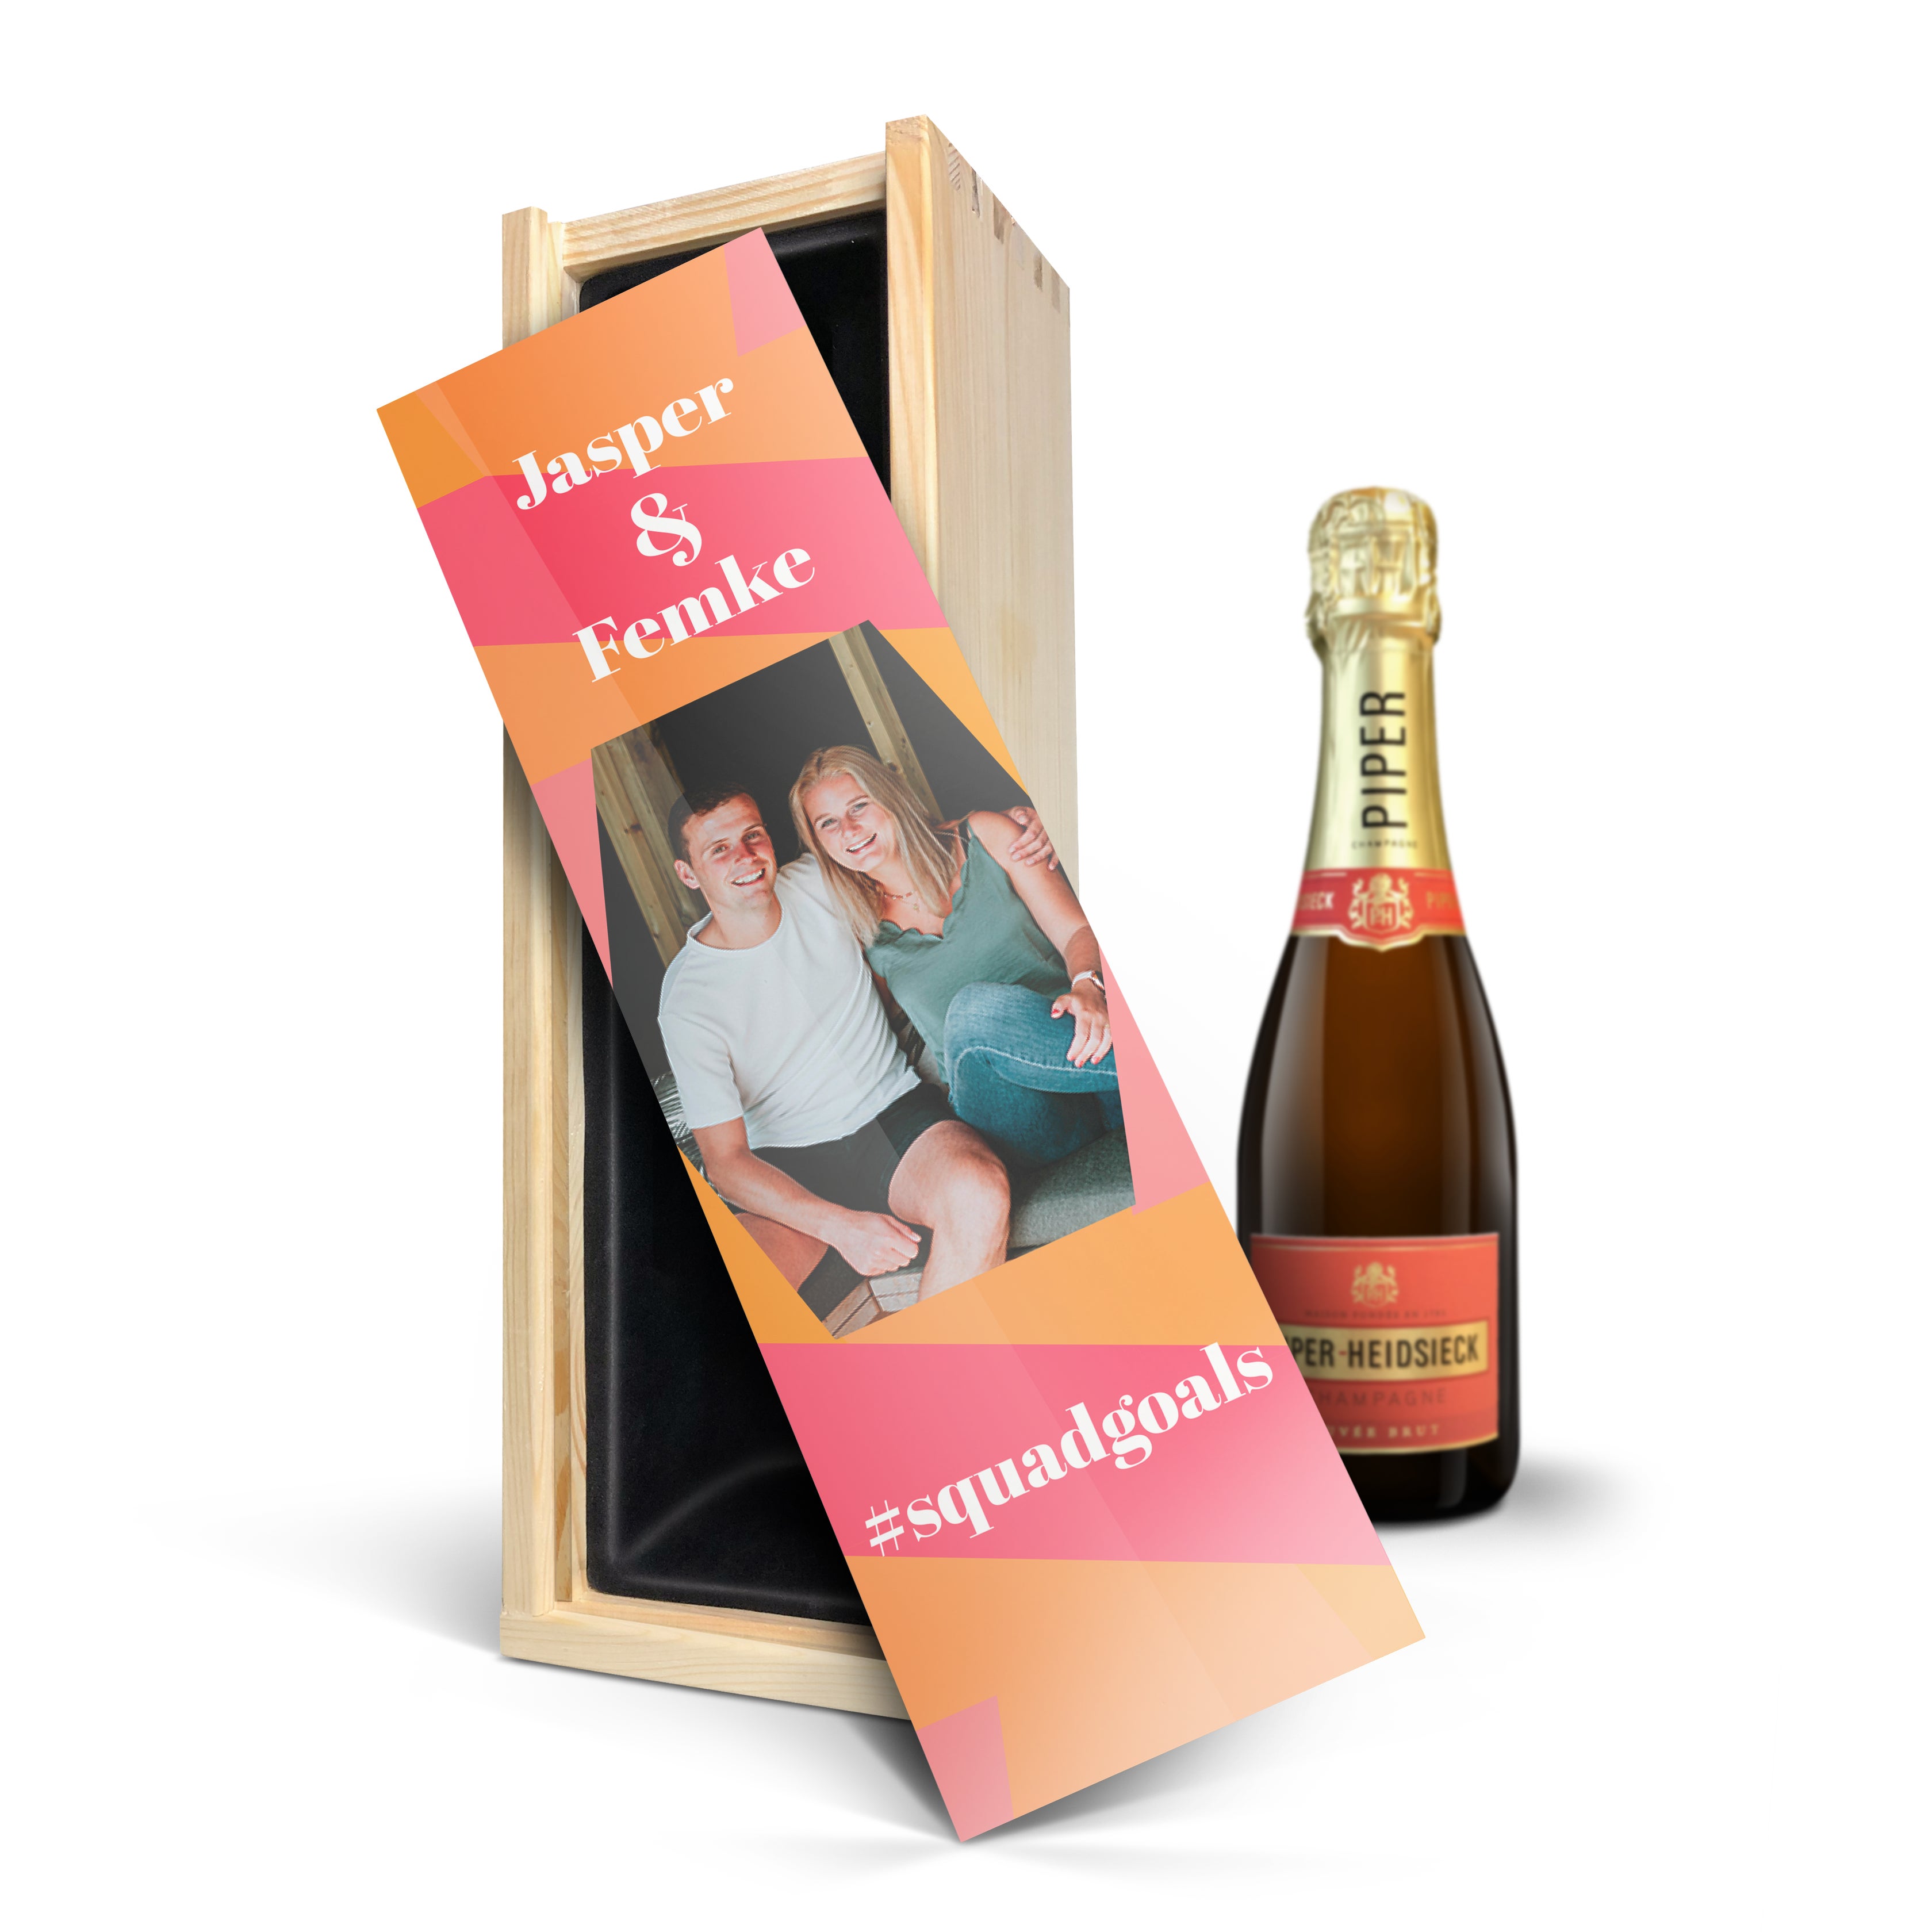 Champagne in bedrukte kist - Piper Heidsieck Brut (375ml)